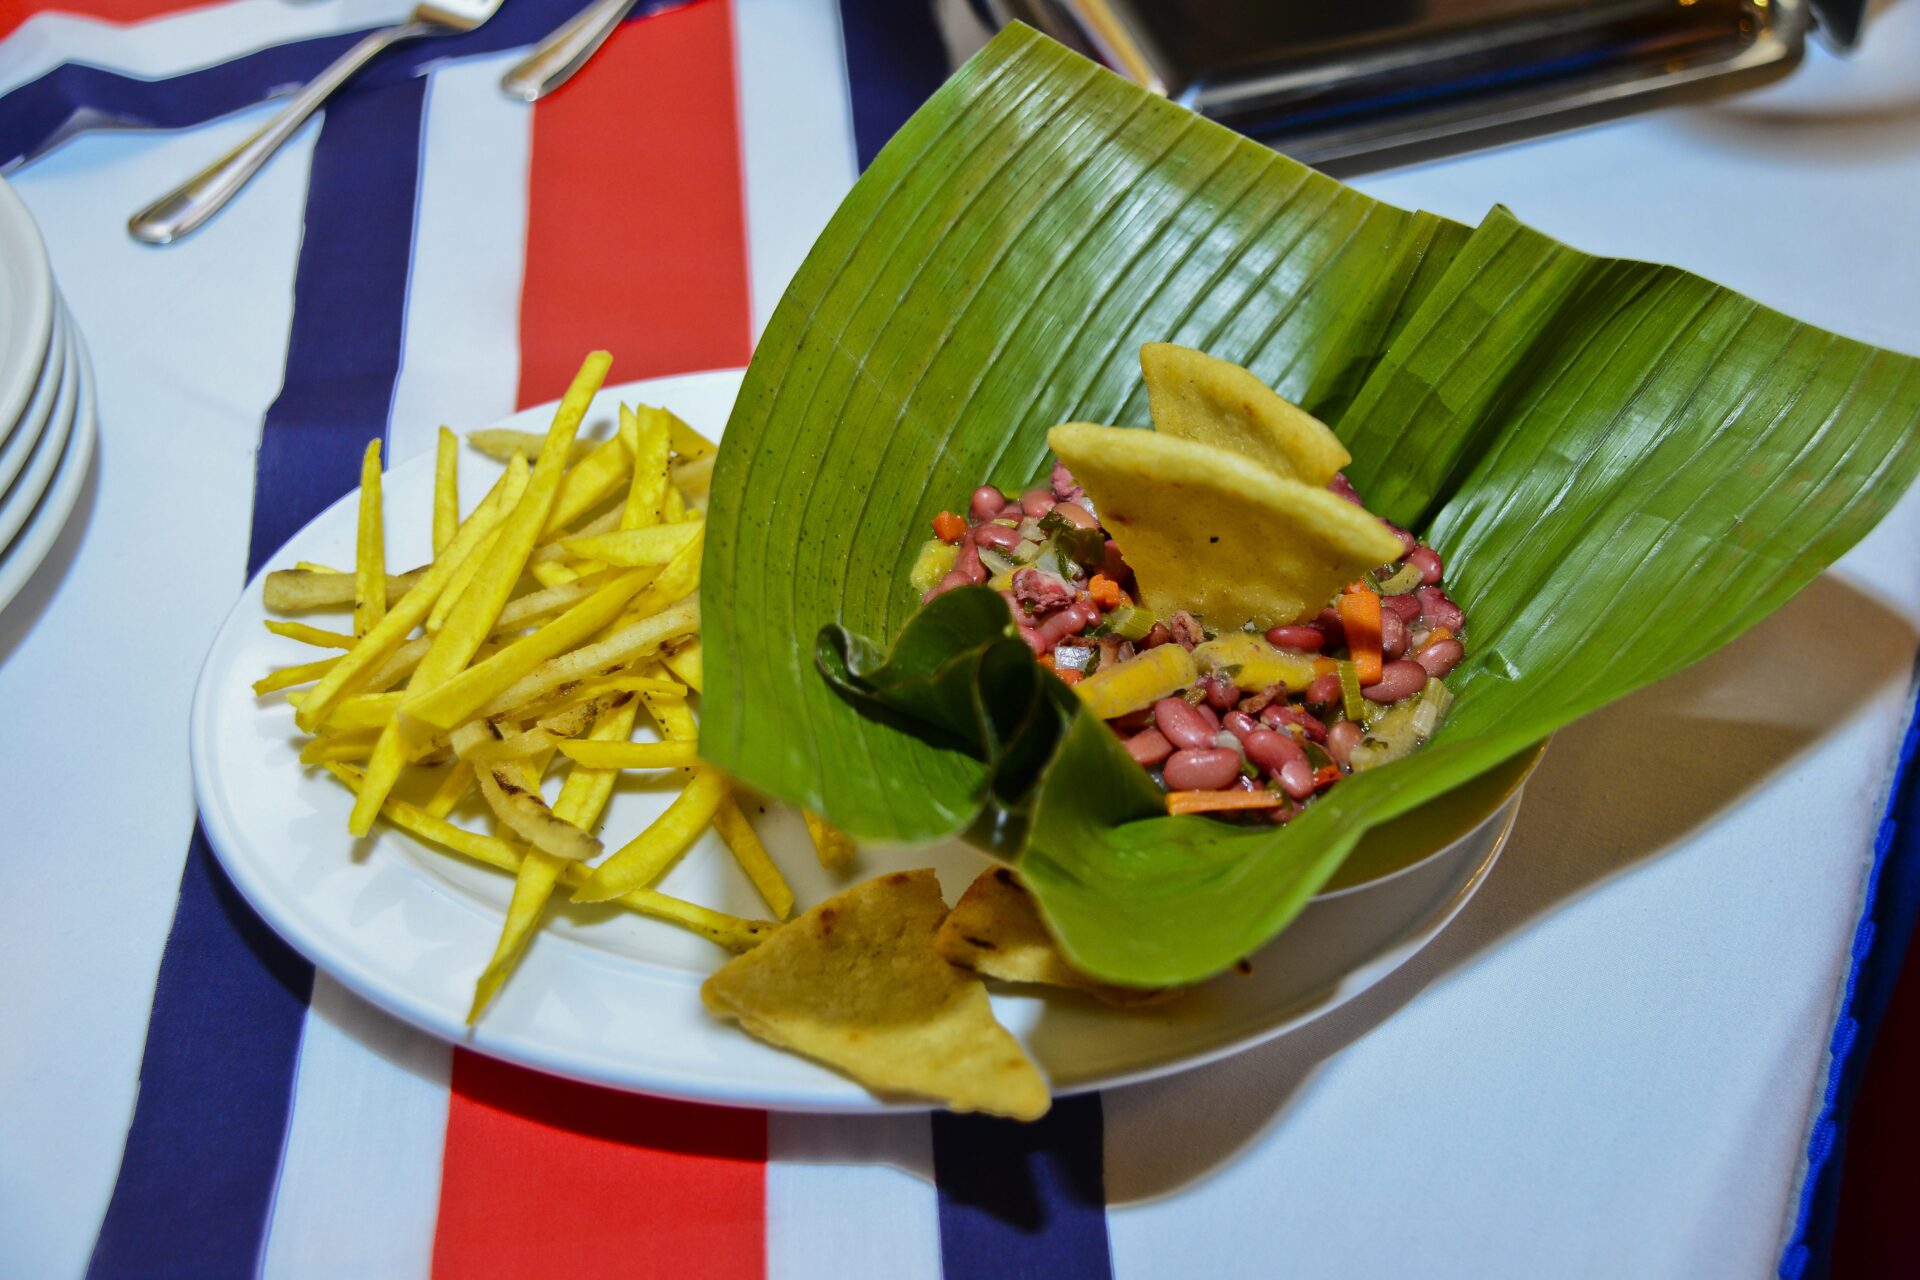 225 gerentes de hoteles y restaurantes impulsarán gastronomía costarricense